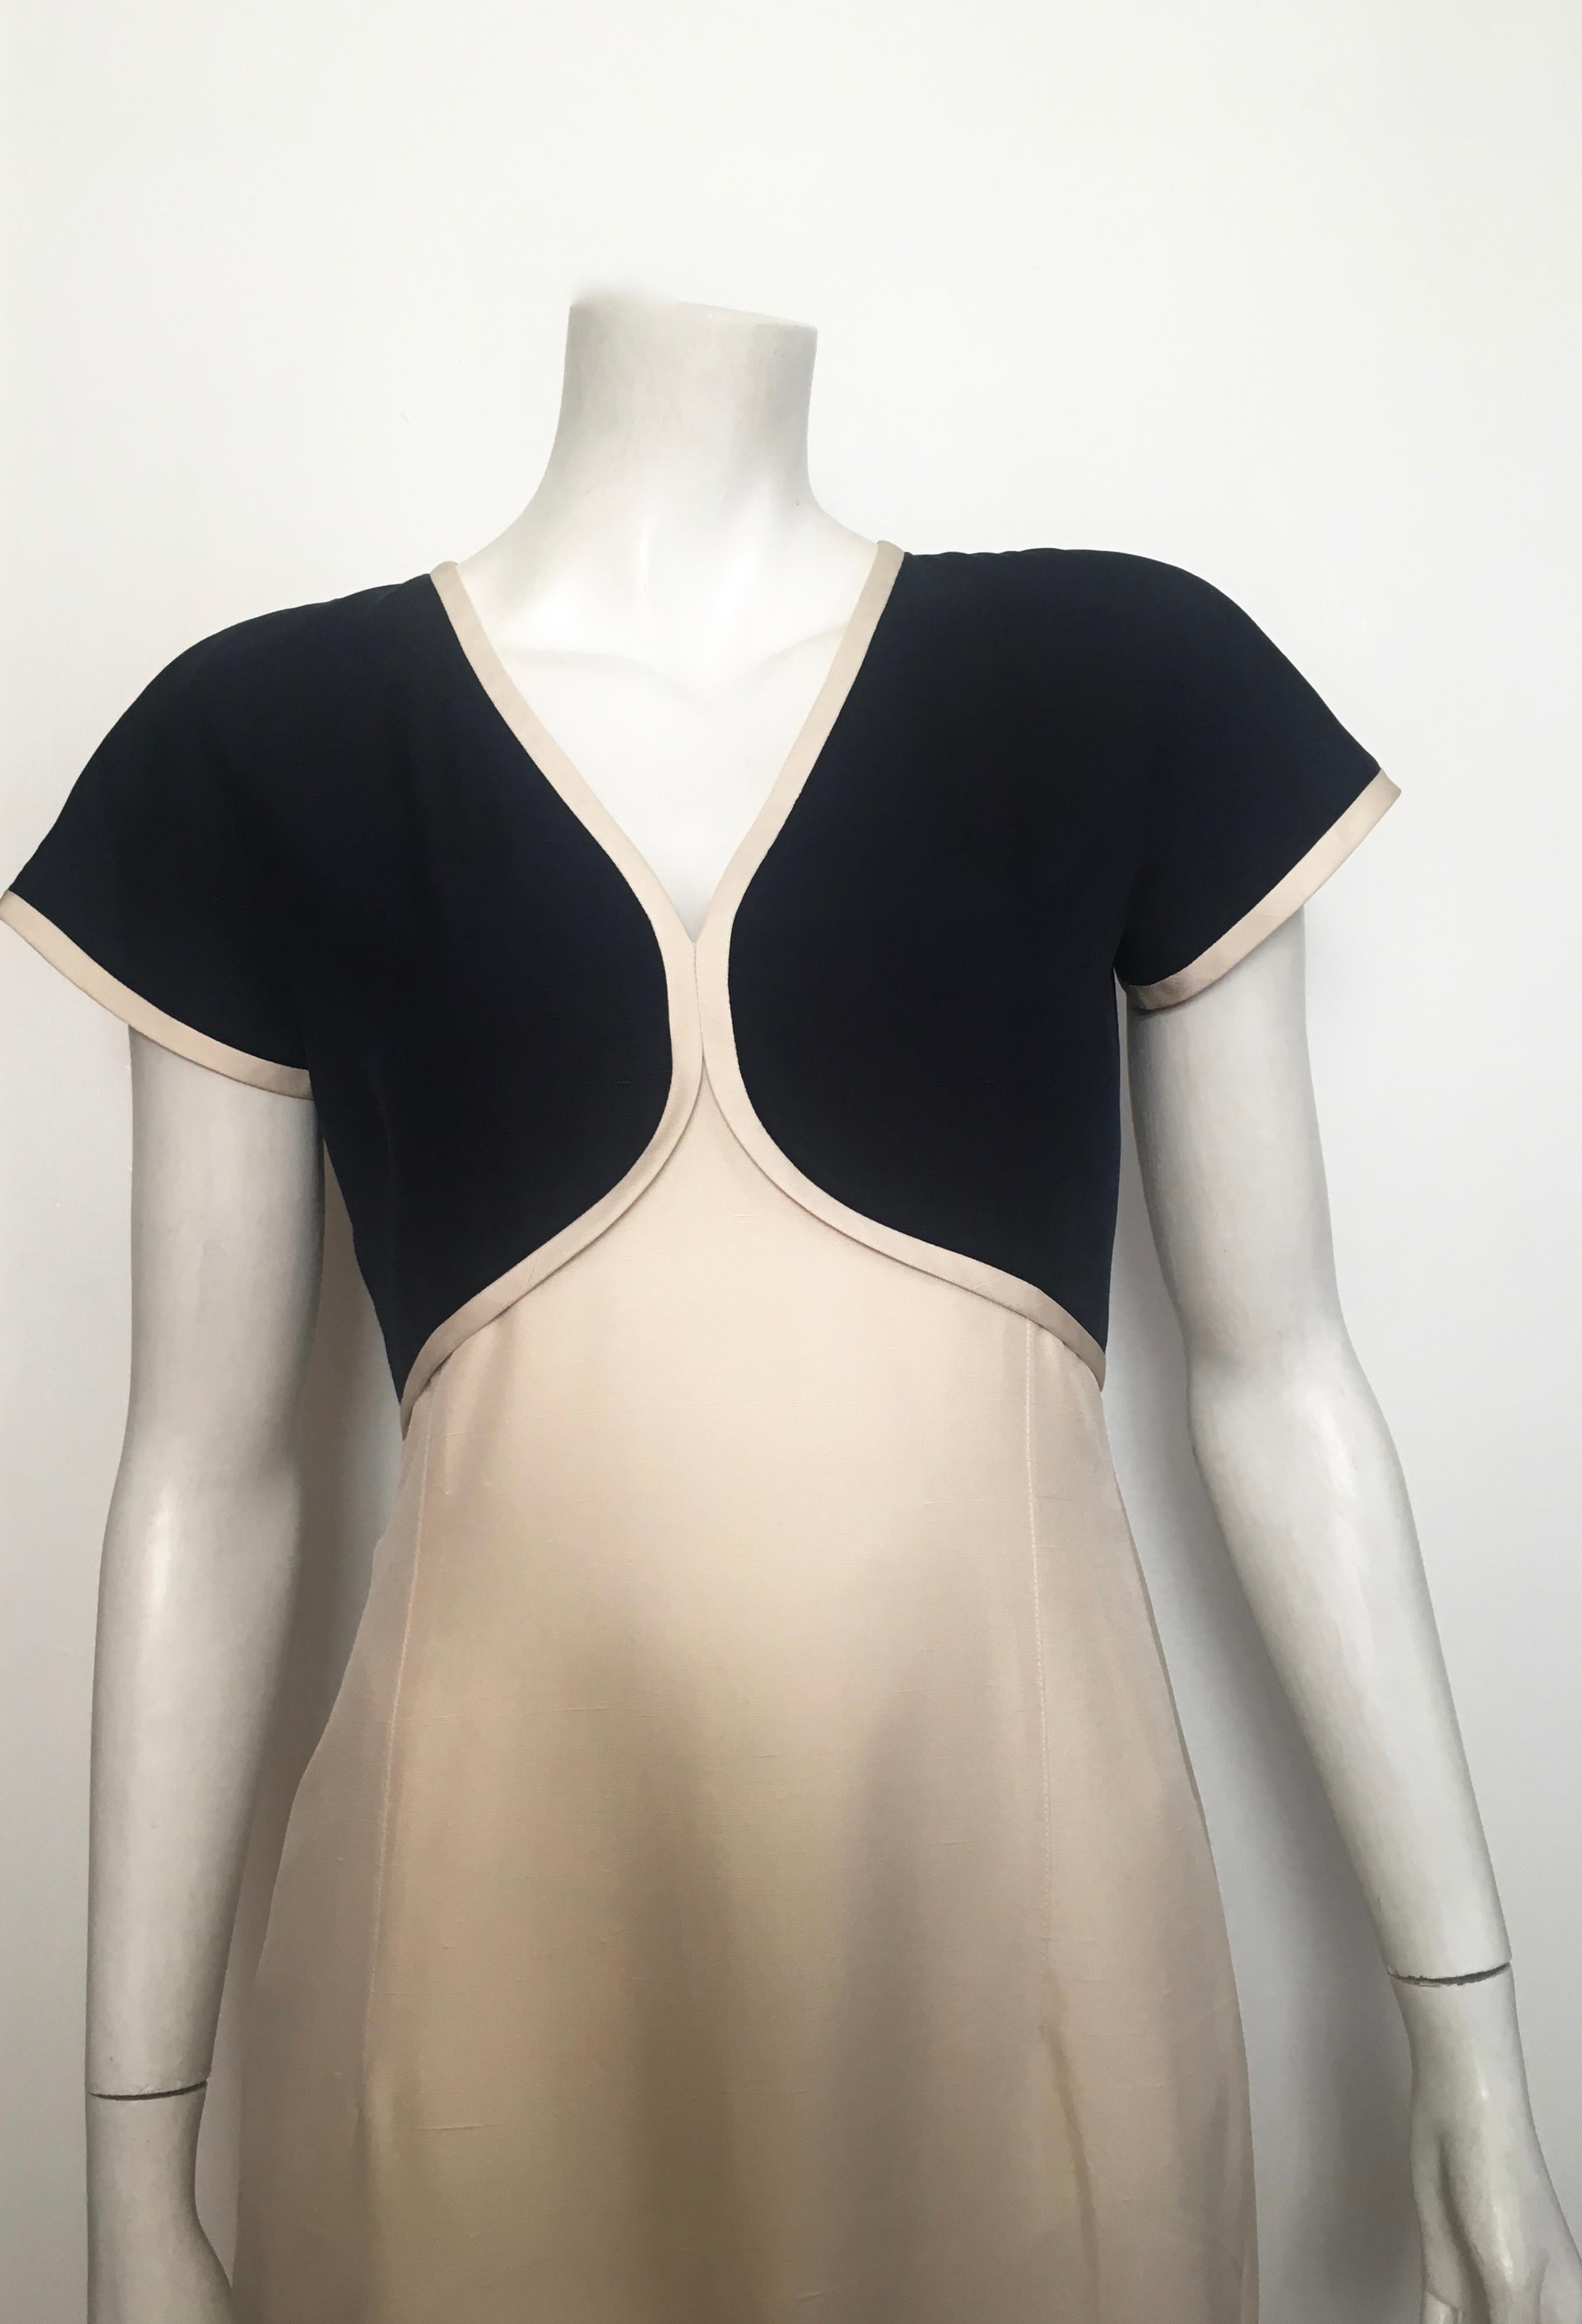 Beige Valentino 1980s Silk Short Sleeve Navy & Cream Dress Size 6. For Sale